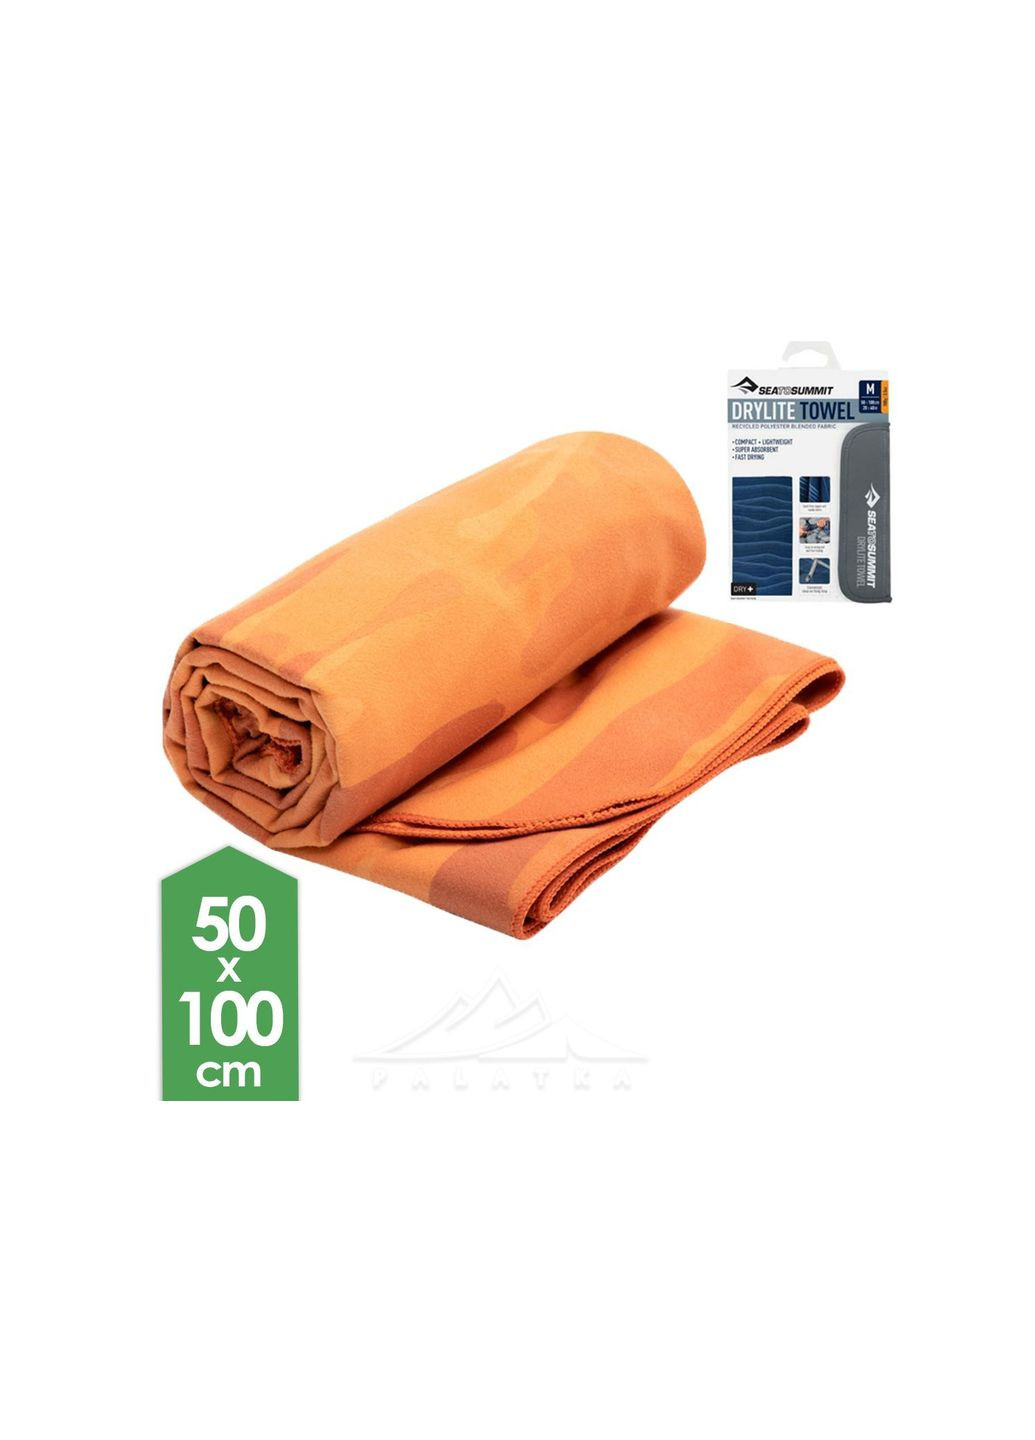 Sea To Summit полотенце drylite towel m оранжевый производство -